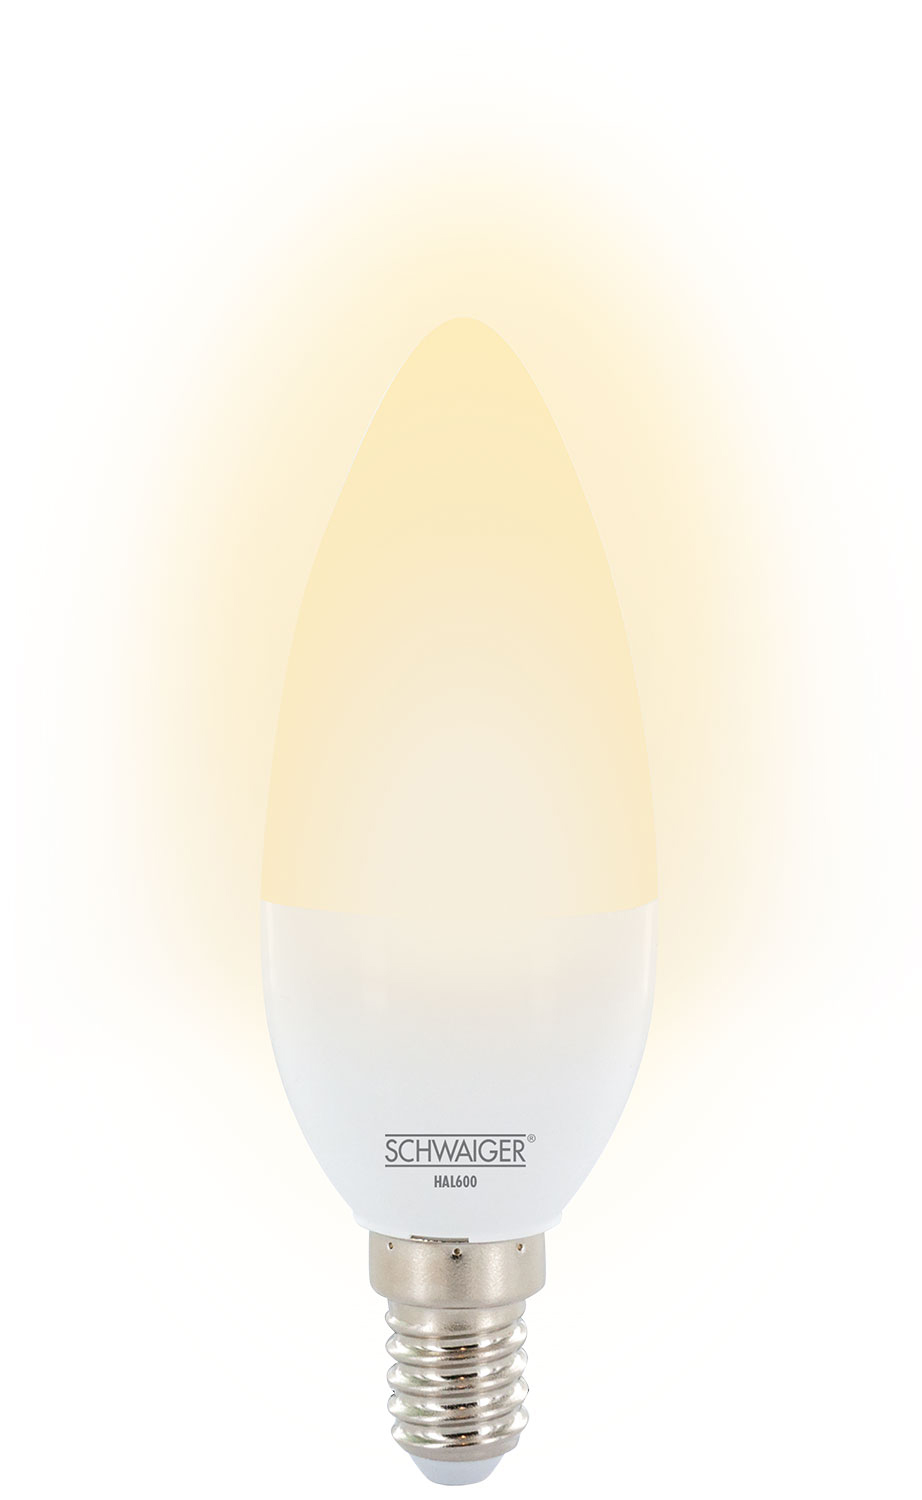 SCHWAIGER -HAL600- LED (E14) Wohnlicht dimmbares Warmweiß als Leuchtmittel